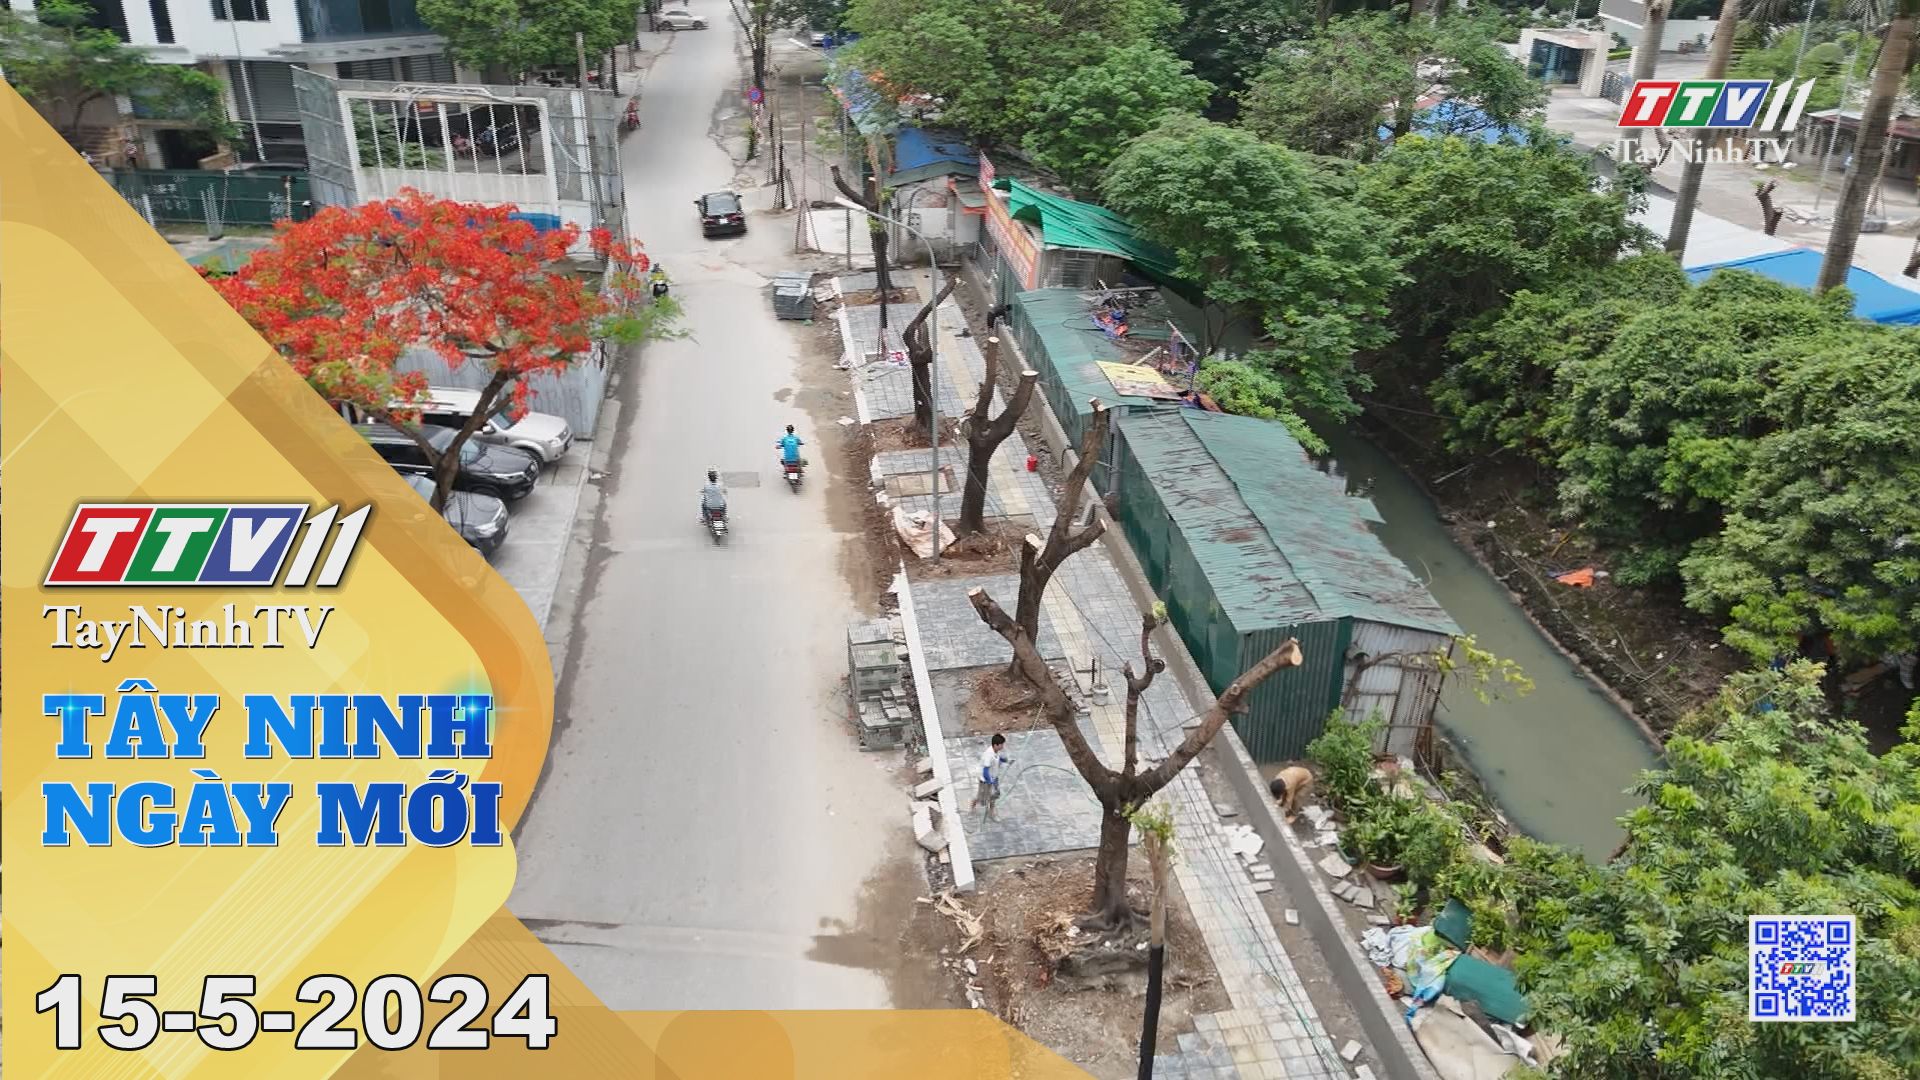 Tây Ninh ngày mới 15-5-2024 | Tin tức hôm nay | TayNinhTV